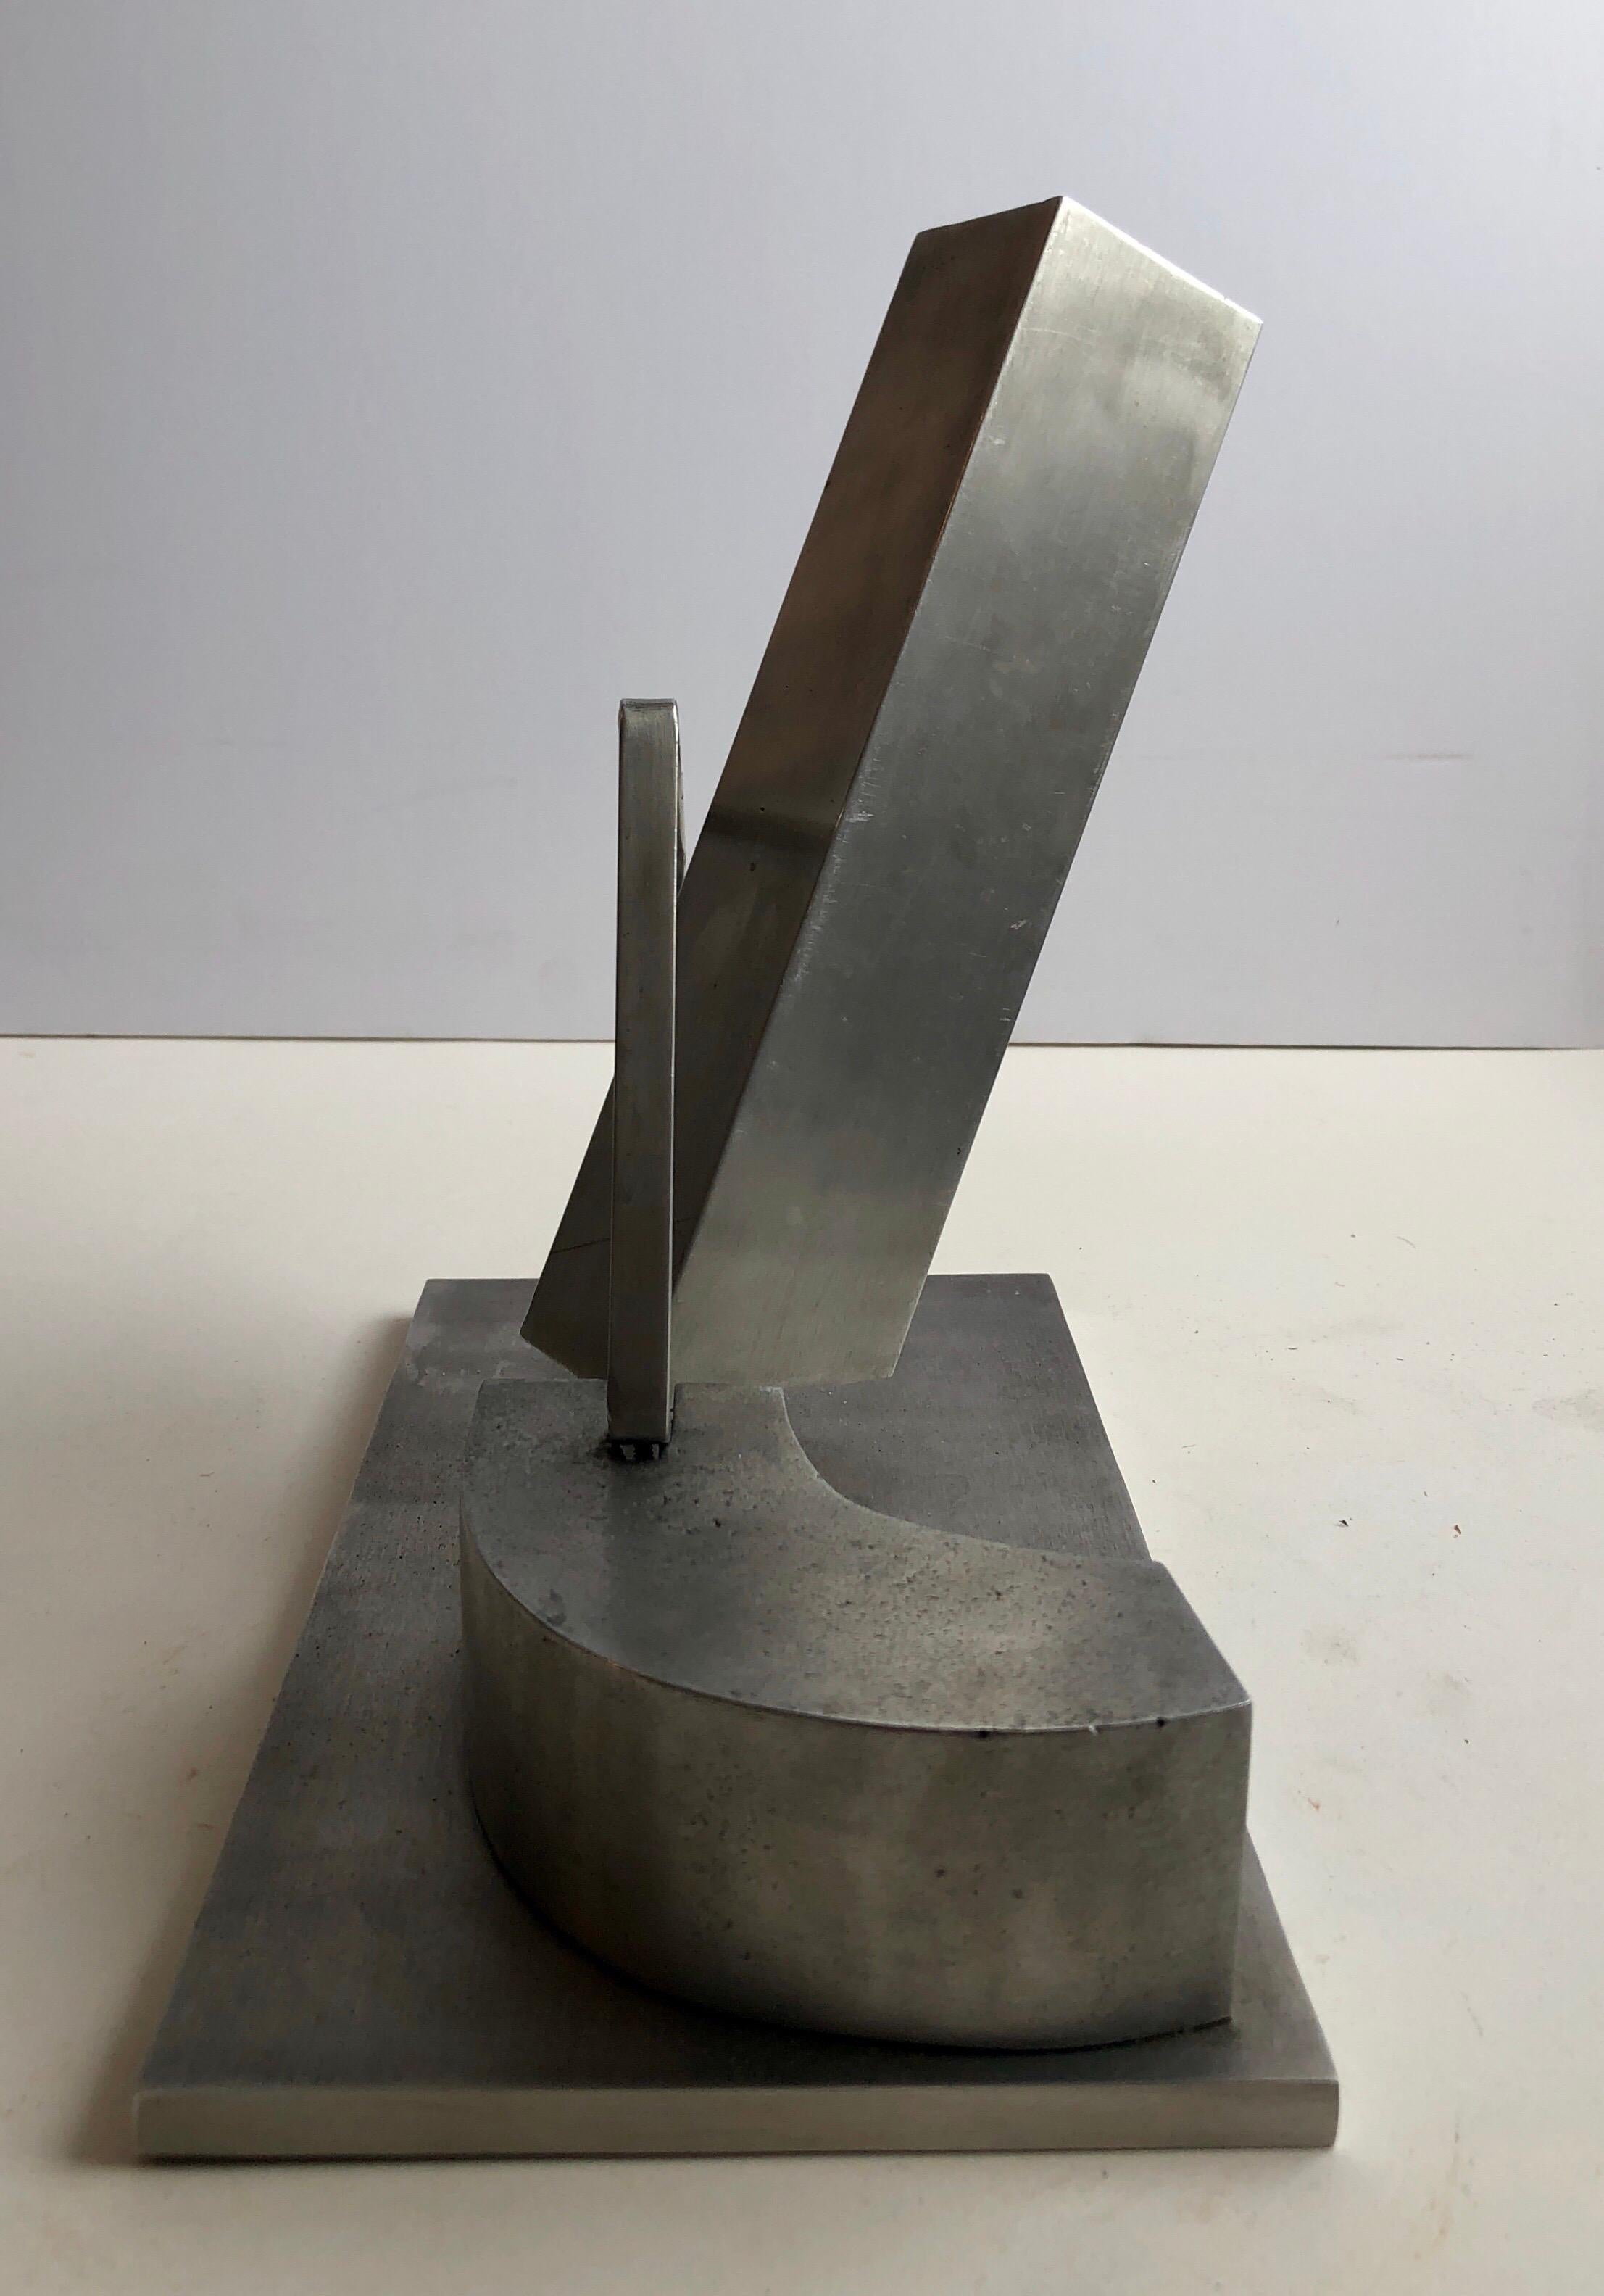 1969 Israeli Abstract Sculpture Stainless Steel Menashe Kadishman Suspension 2